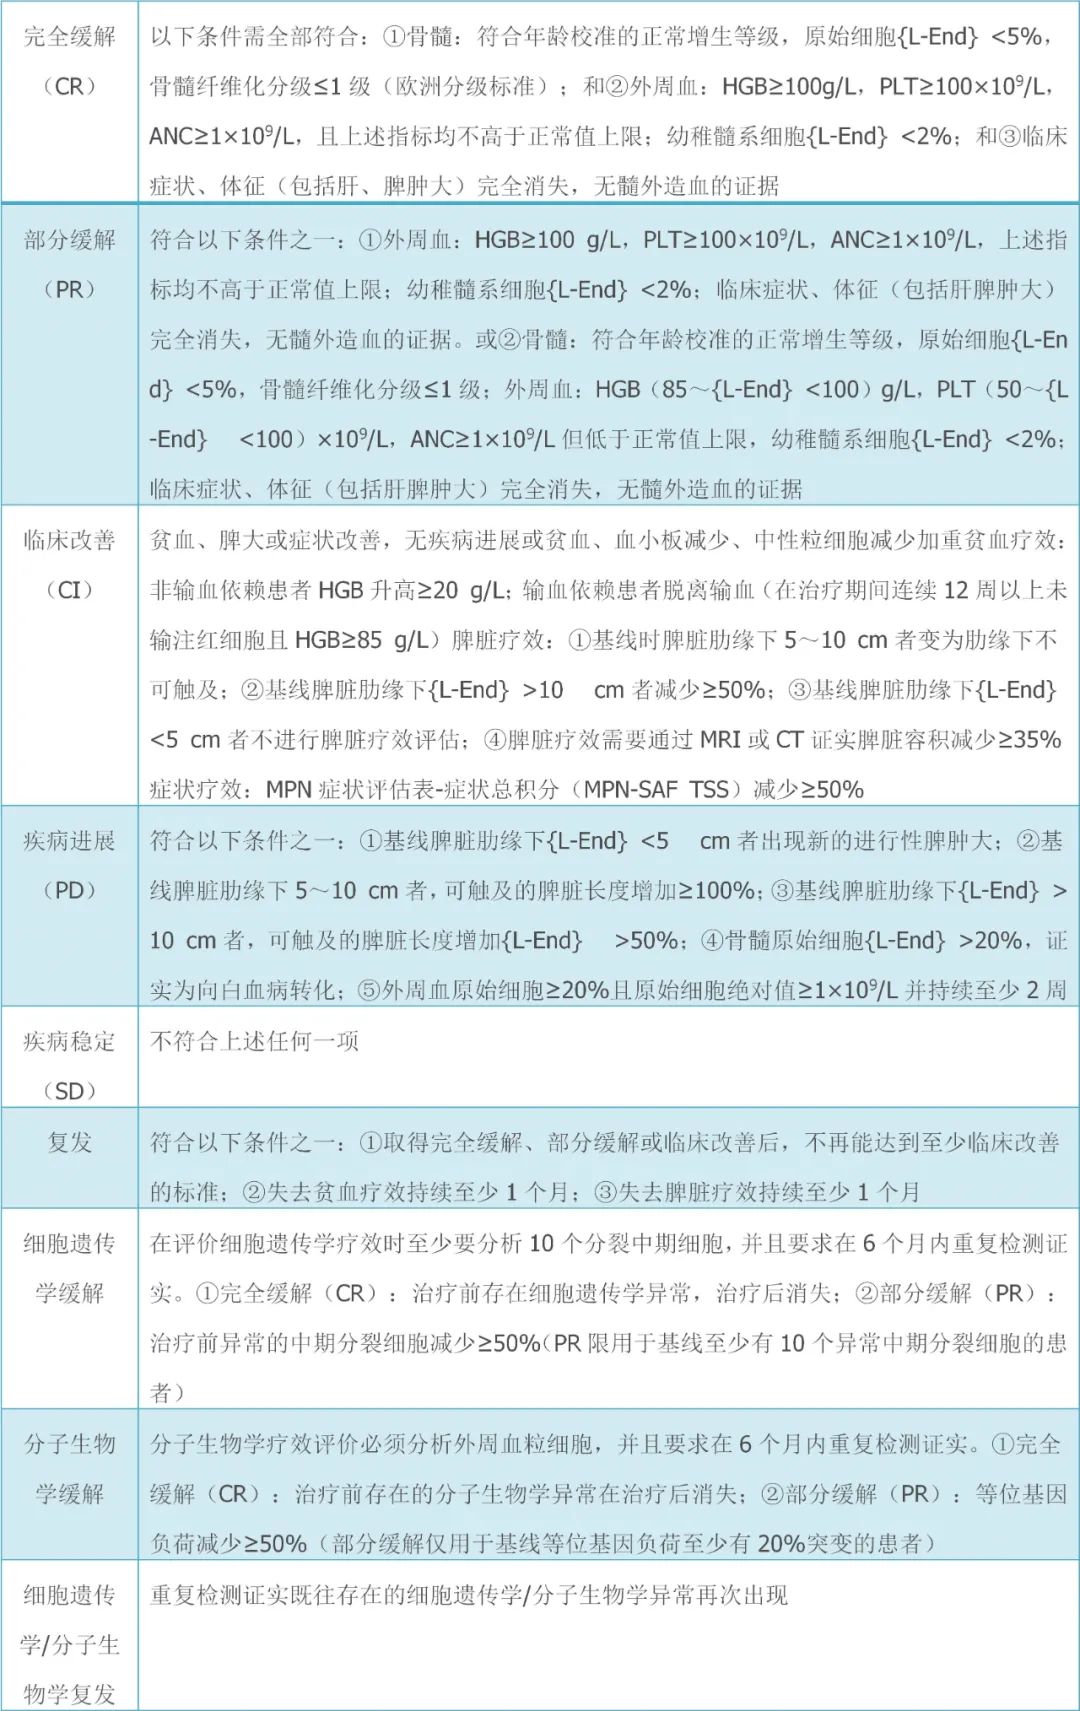 2019版原发性骨髓纤维化诊断与治疗中国指南（下）-MPN家园